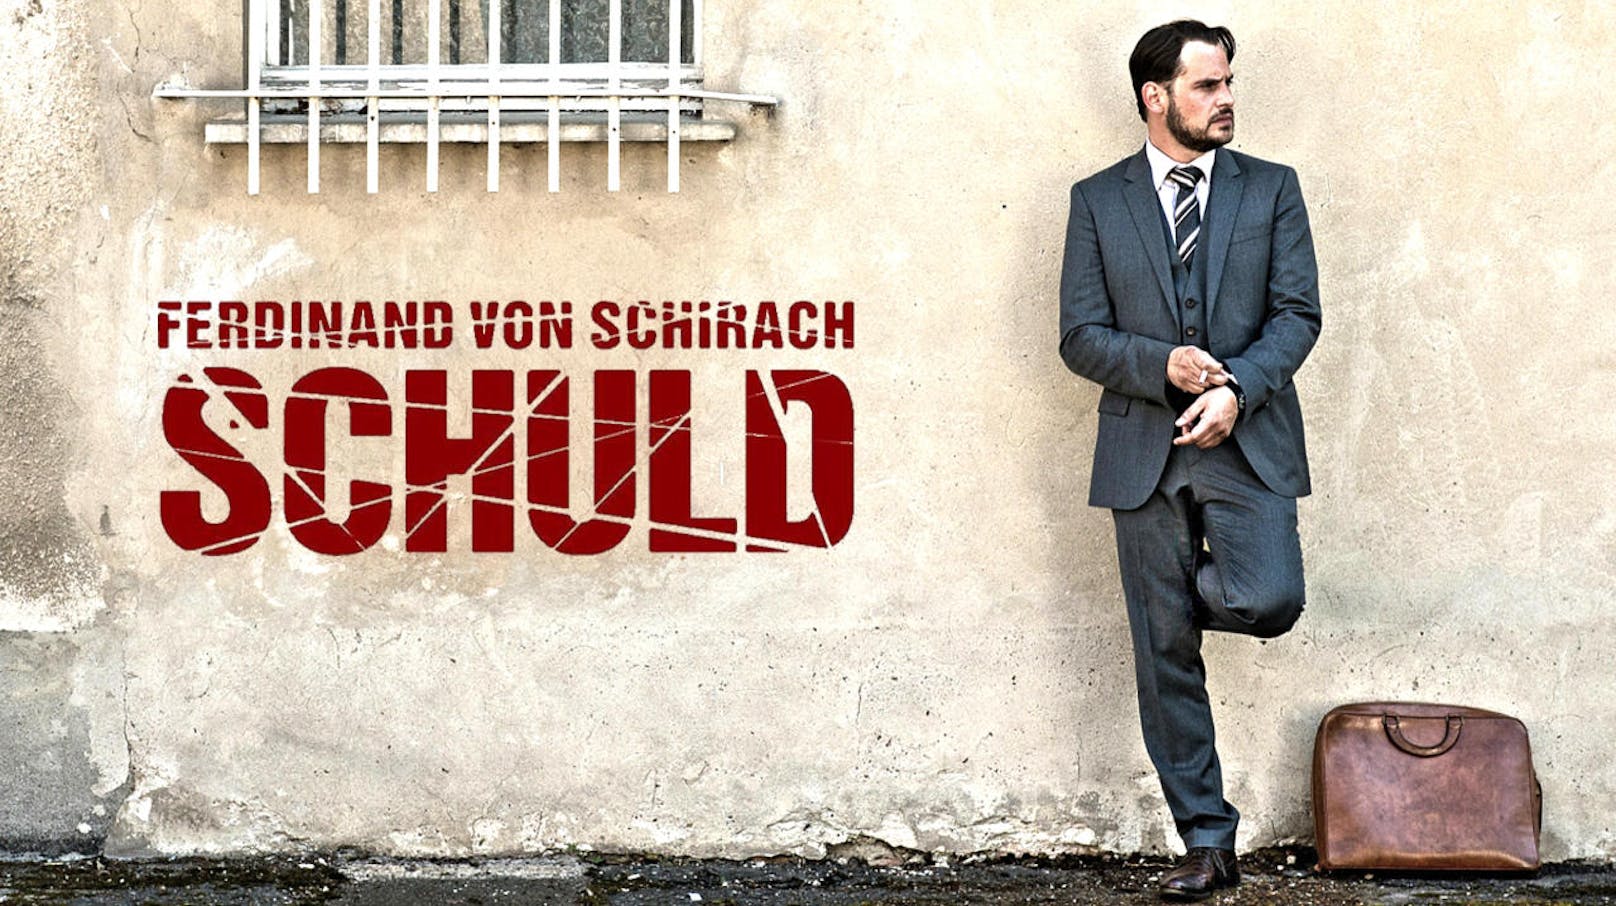 Schuld nach Ferdinand von Schirach - Staffel 1, ab 1.7.